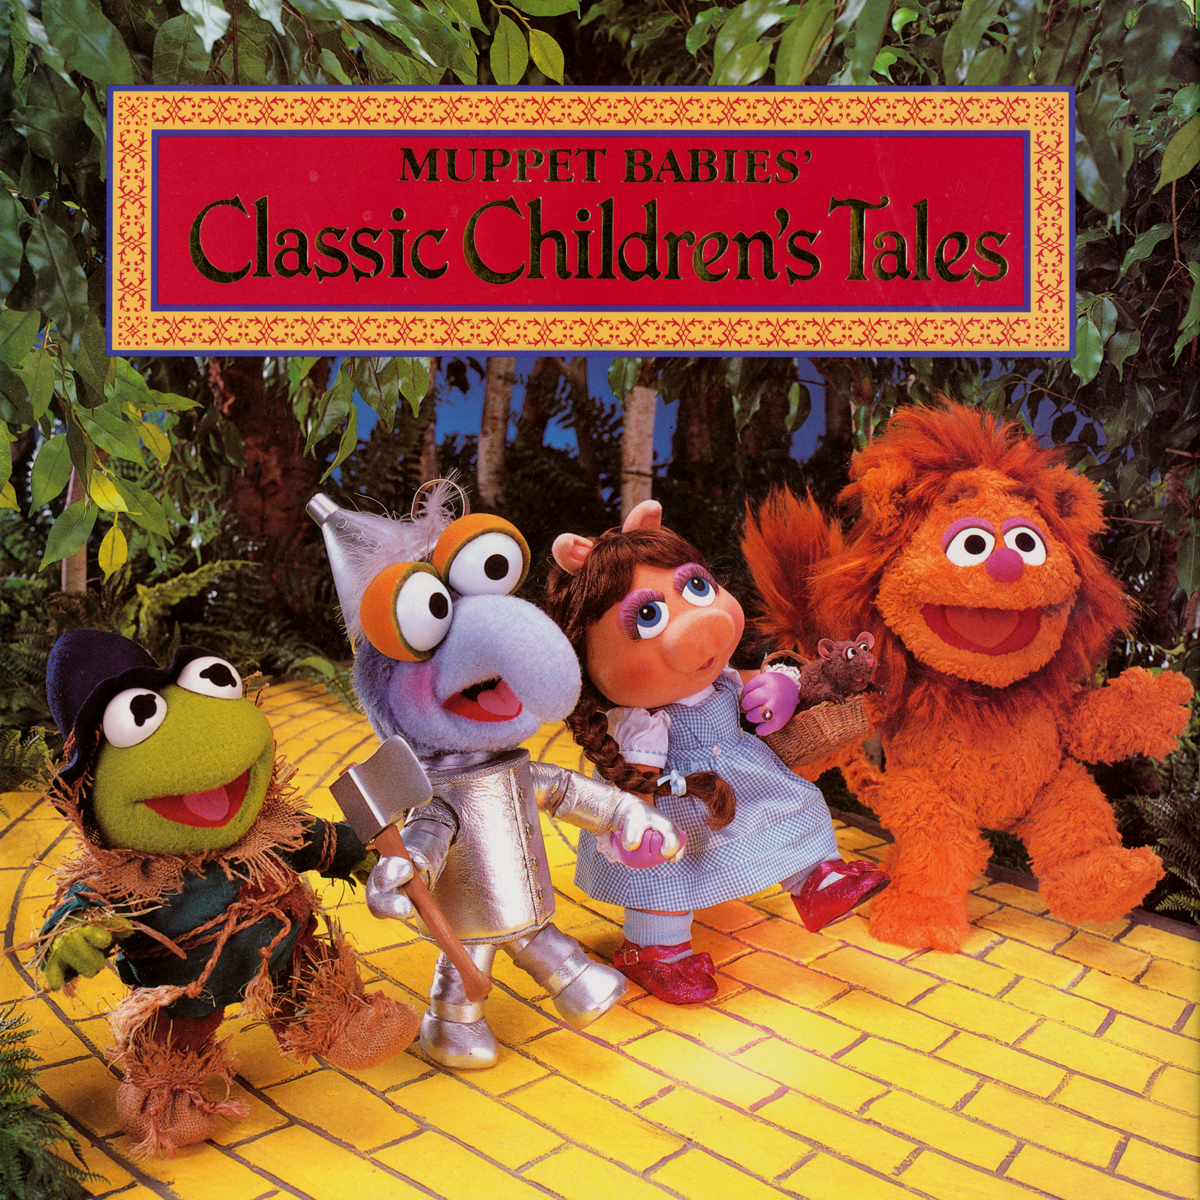 Muppet Babies' Classic Children's Tales | Muppet Wiki | FANDOM powered